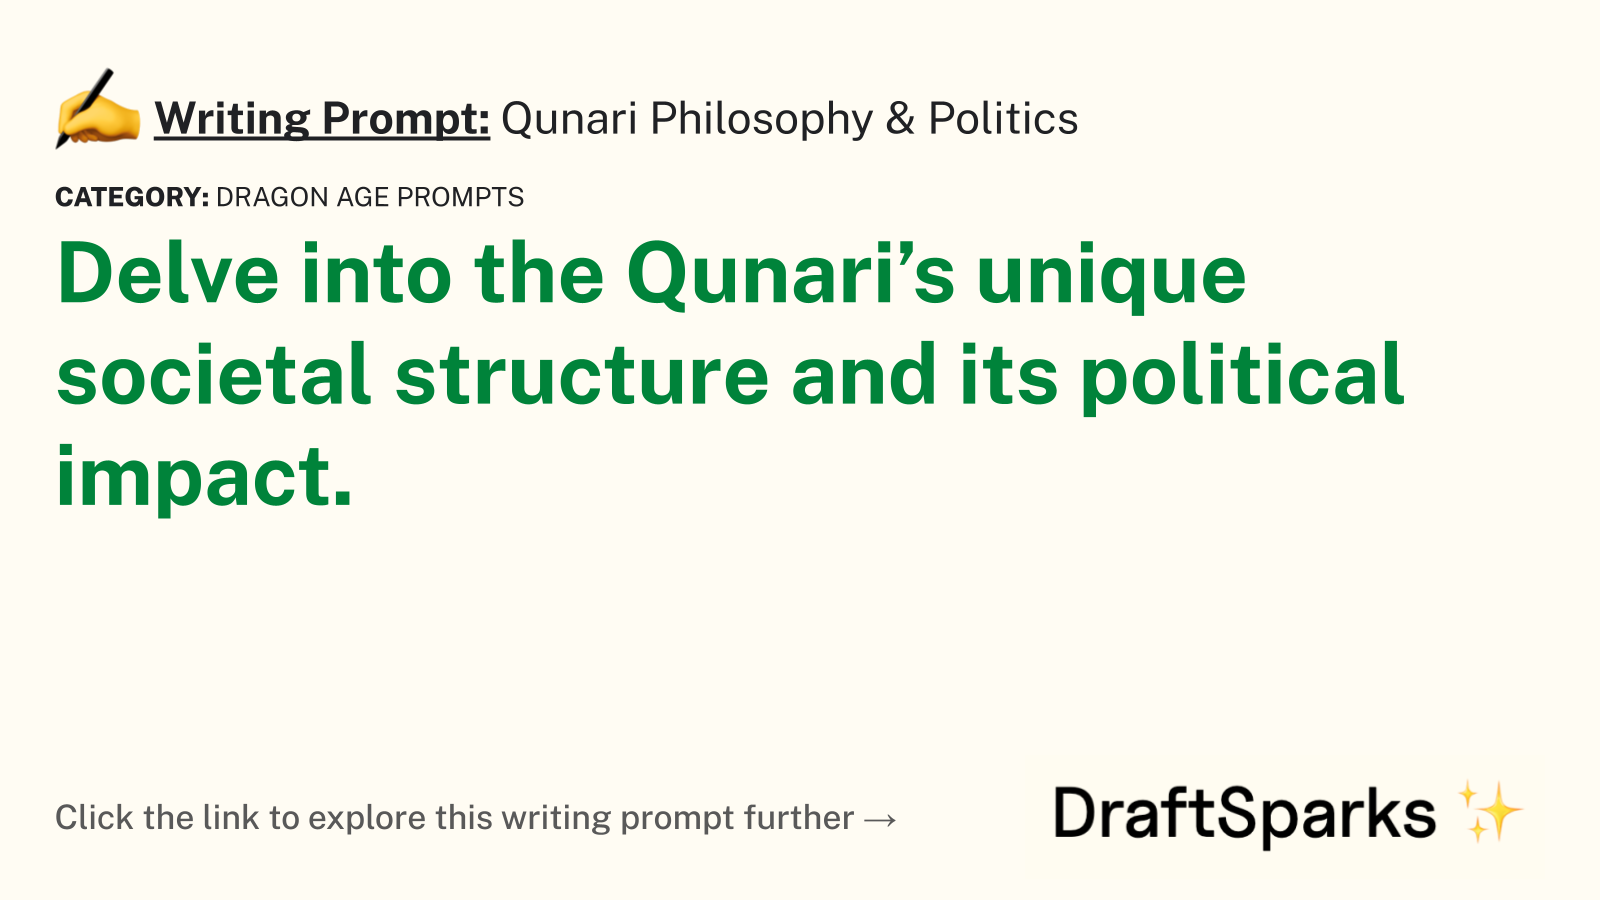 Qunari Philosophy & Politics